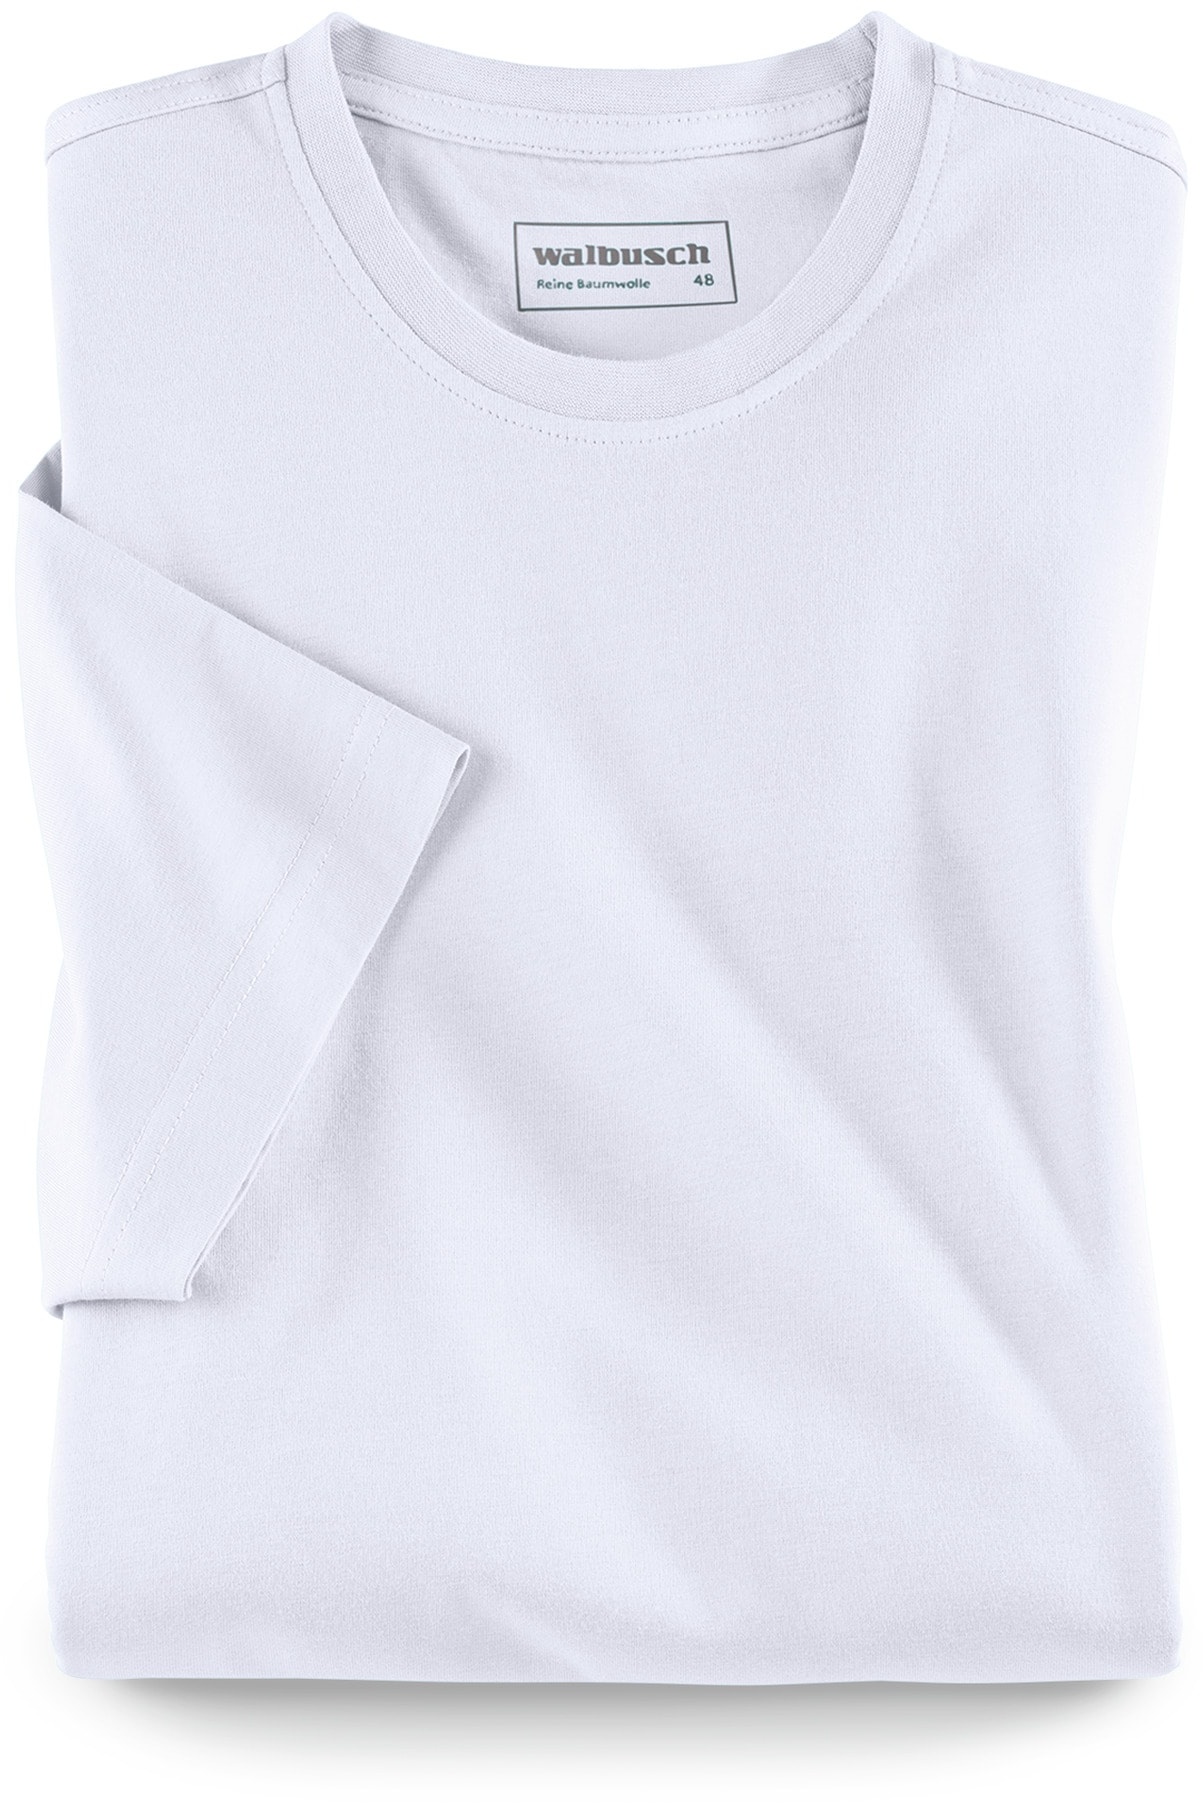 Walbusch Herren T Shirt Rundhalsausschnitt einfarbig Weiß 54